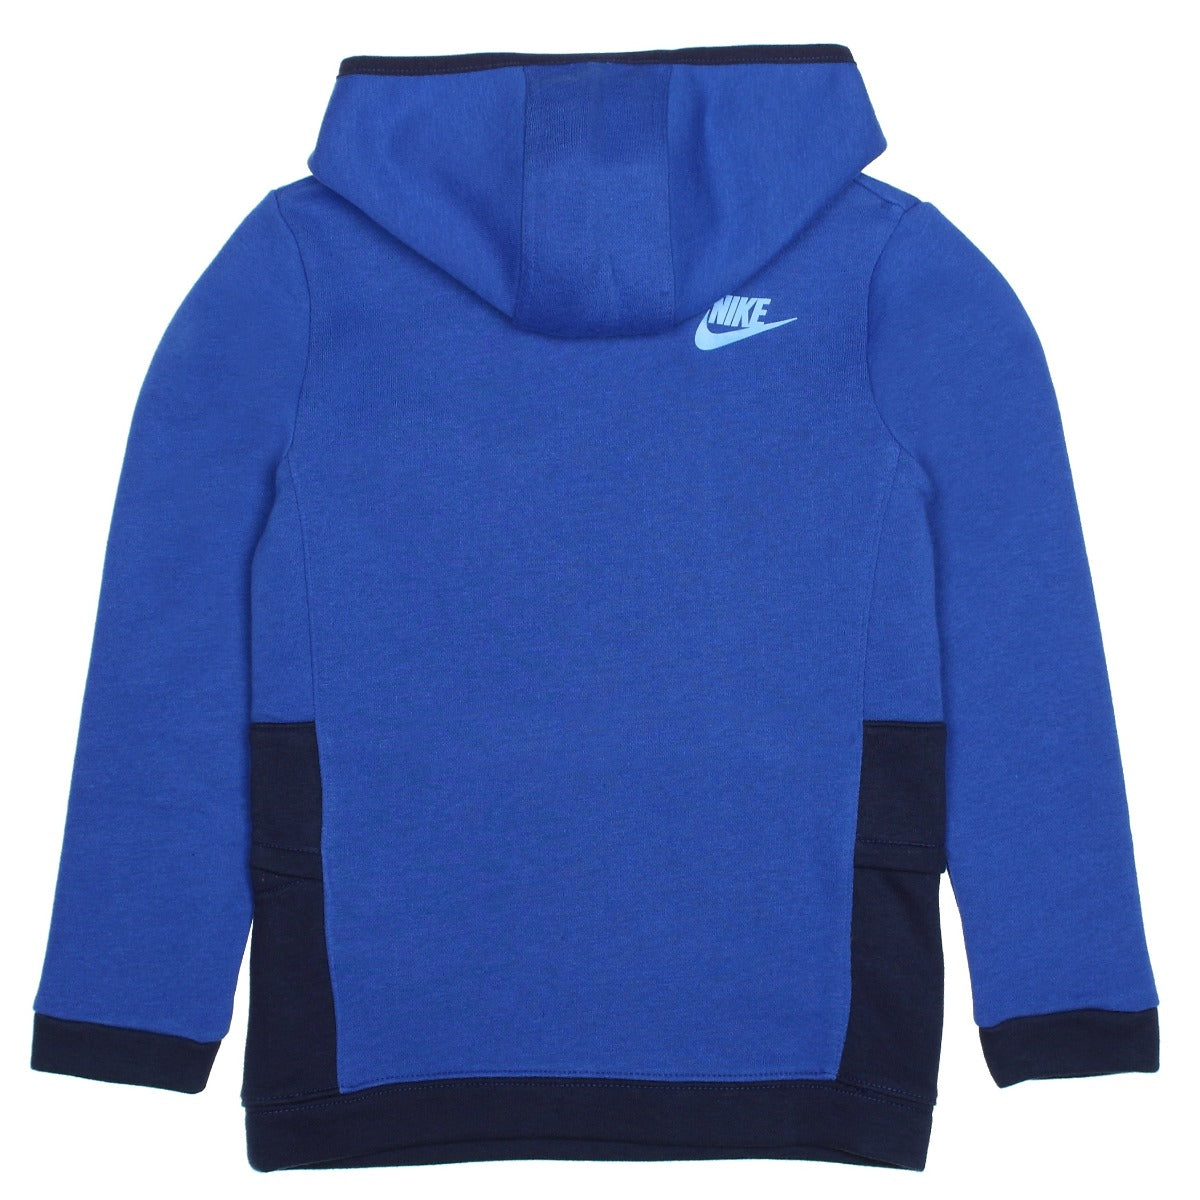 Nike Sportswear Ampliffy Kids Sweatshirt - Blue